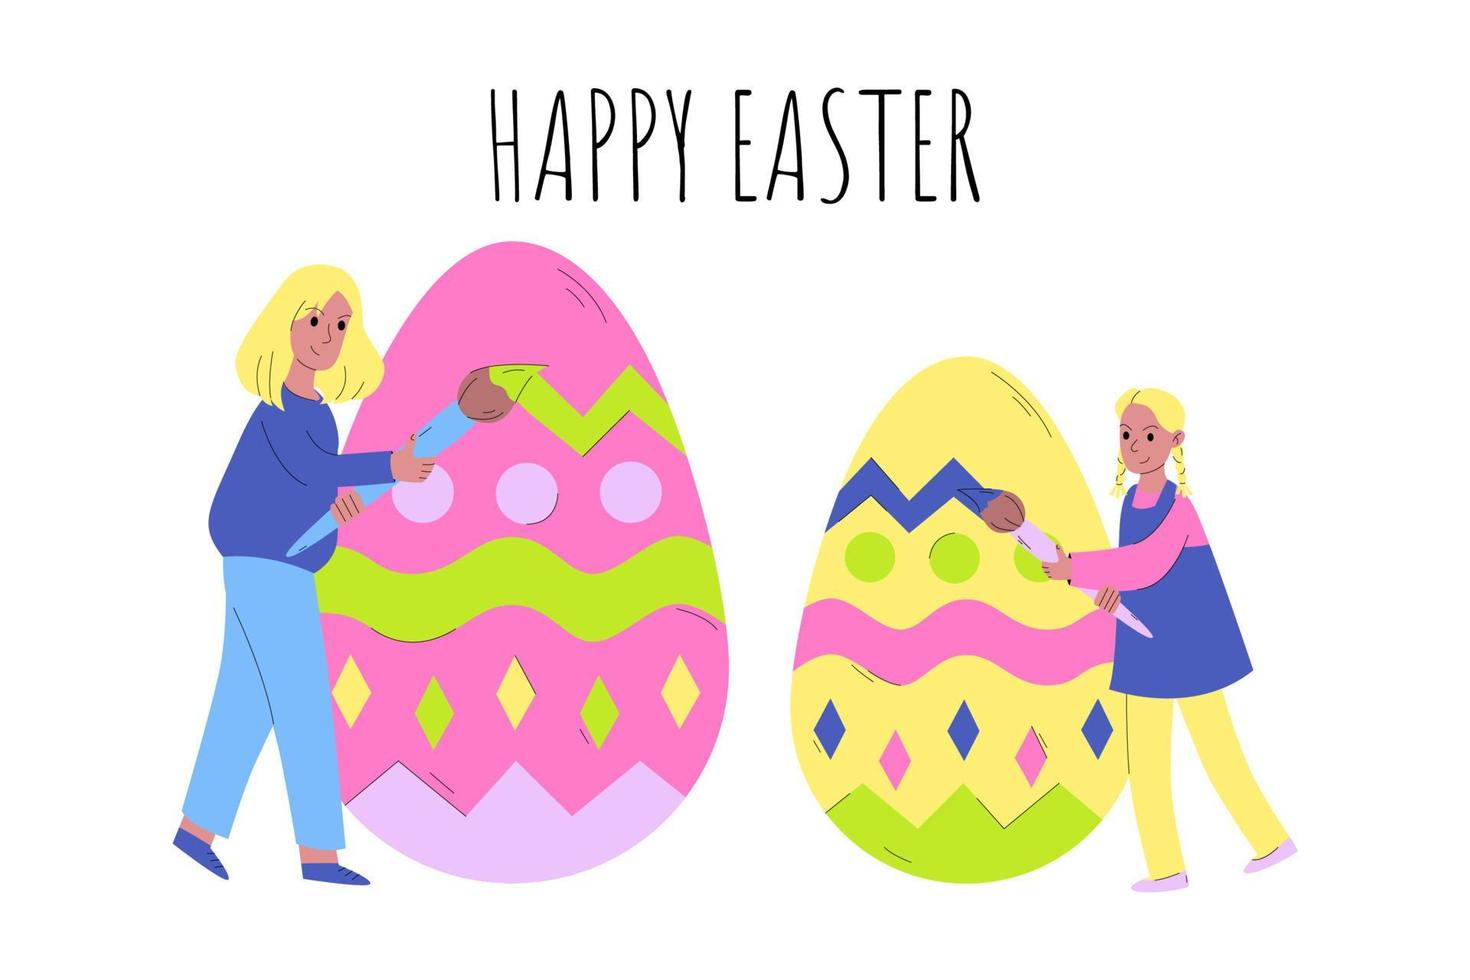 små mor och dotter målar påskägg. glad påsk. konceptet att förbereda för påsk, fira påsk med hela familjen. vektor illustration i tecknad stil.